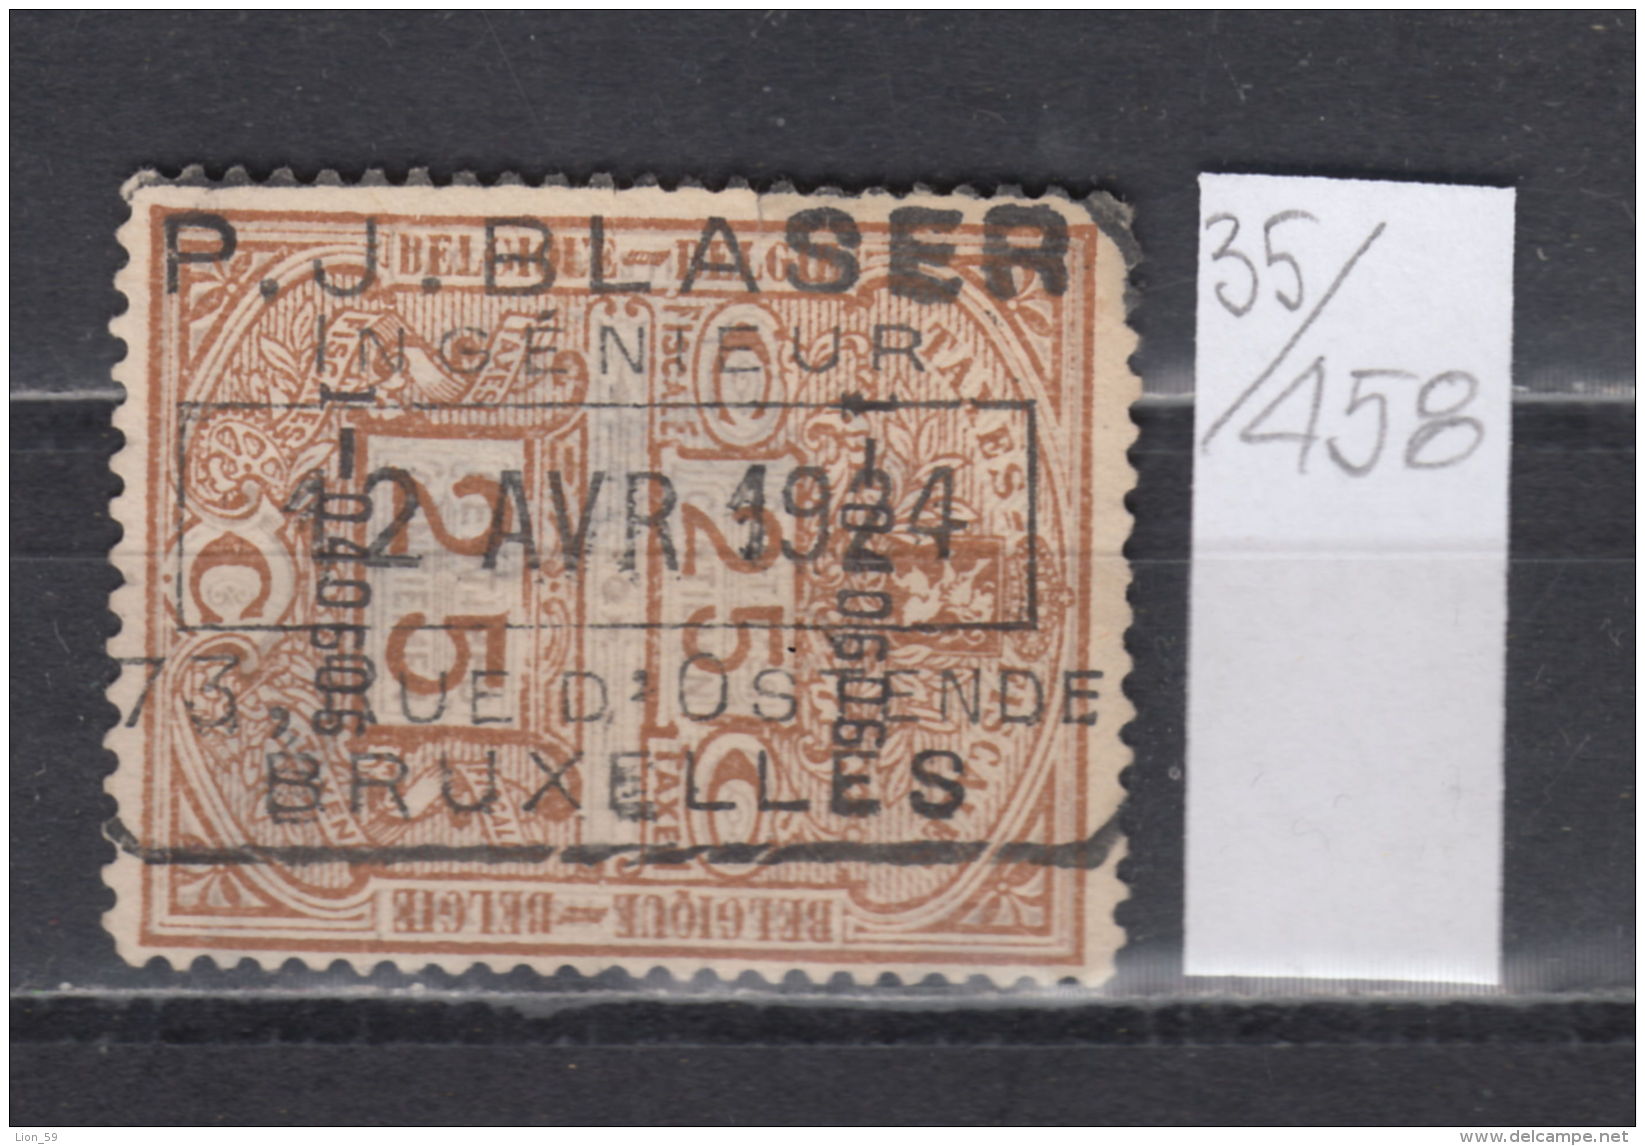 35K458 / 1924 - 25 C. TAXES FISCALES , RAILWAY P.J. BLASER - BRUXELLES , Revenue Fiscaux Steuermarken , Belgique Belgium - Stamps